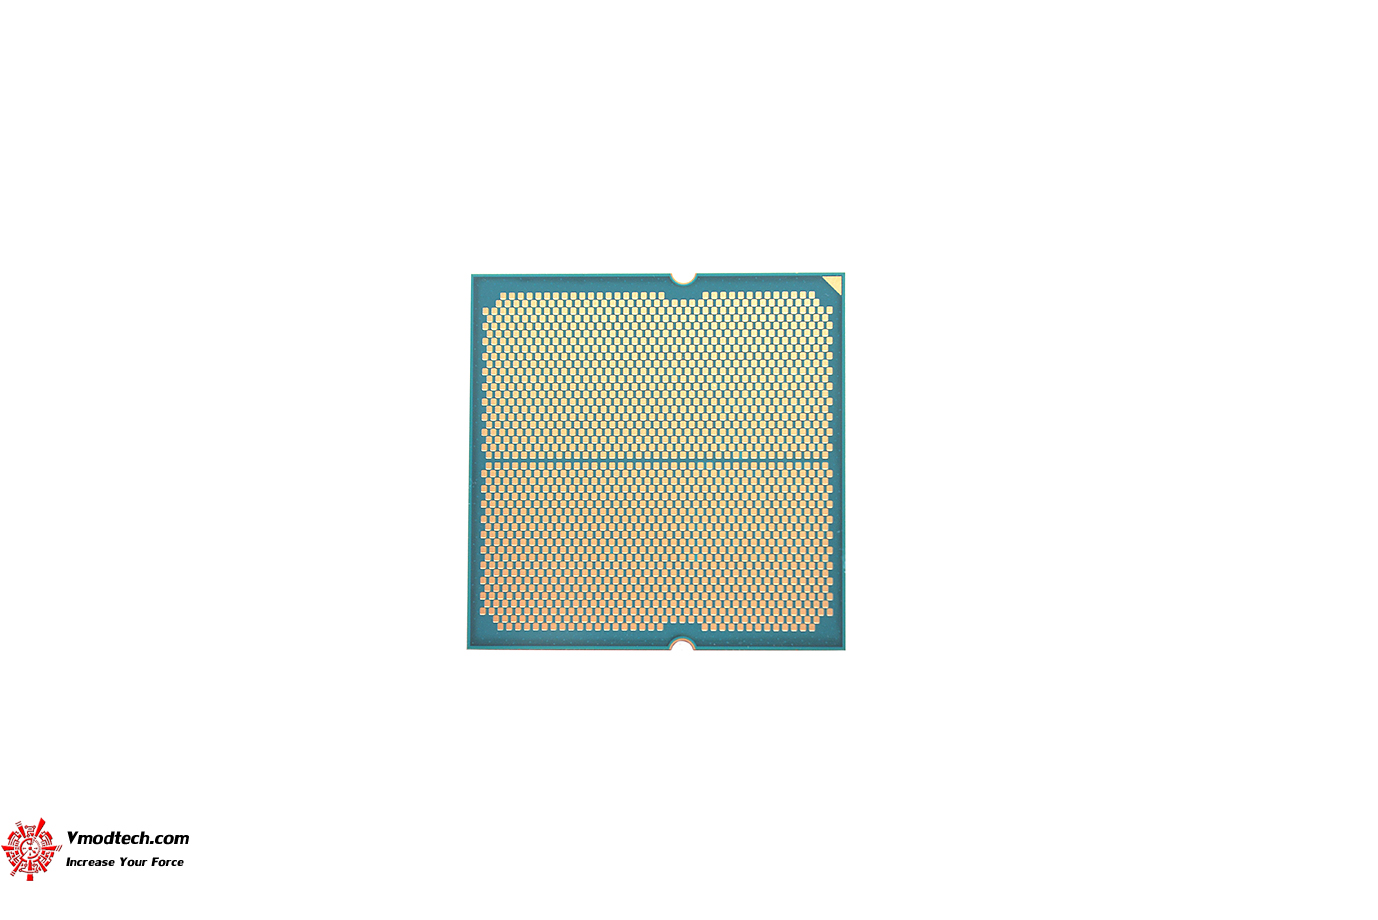 dsc 3755 AMD RYZEN 5 7600 PROCESSOR REVIEW